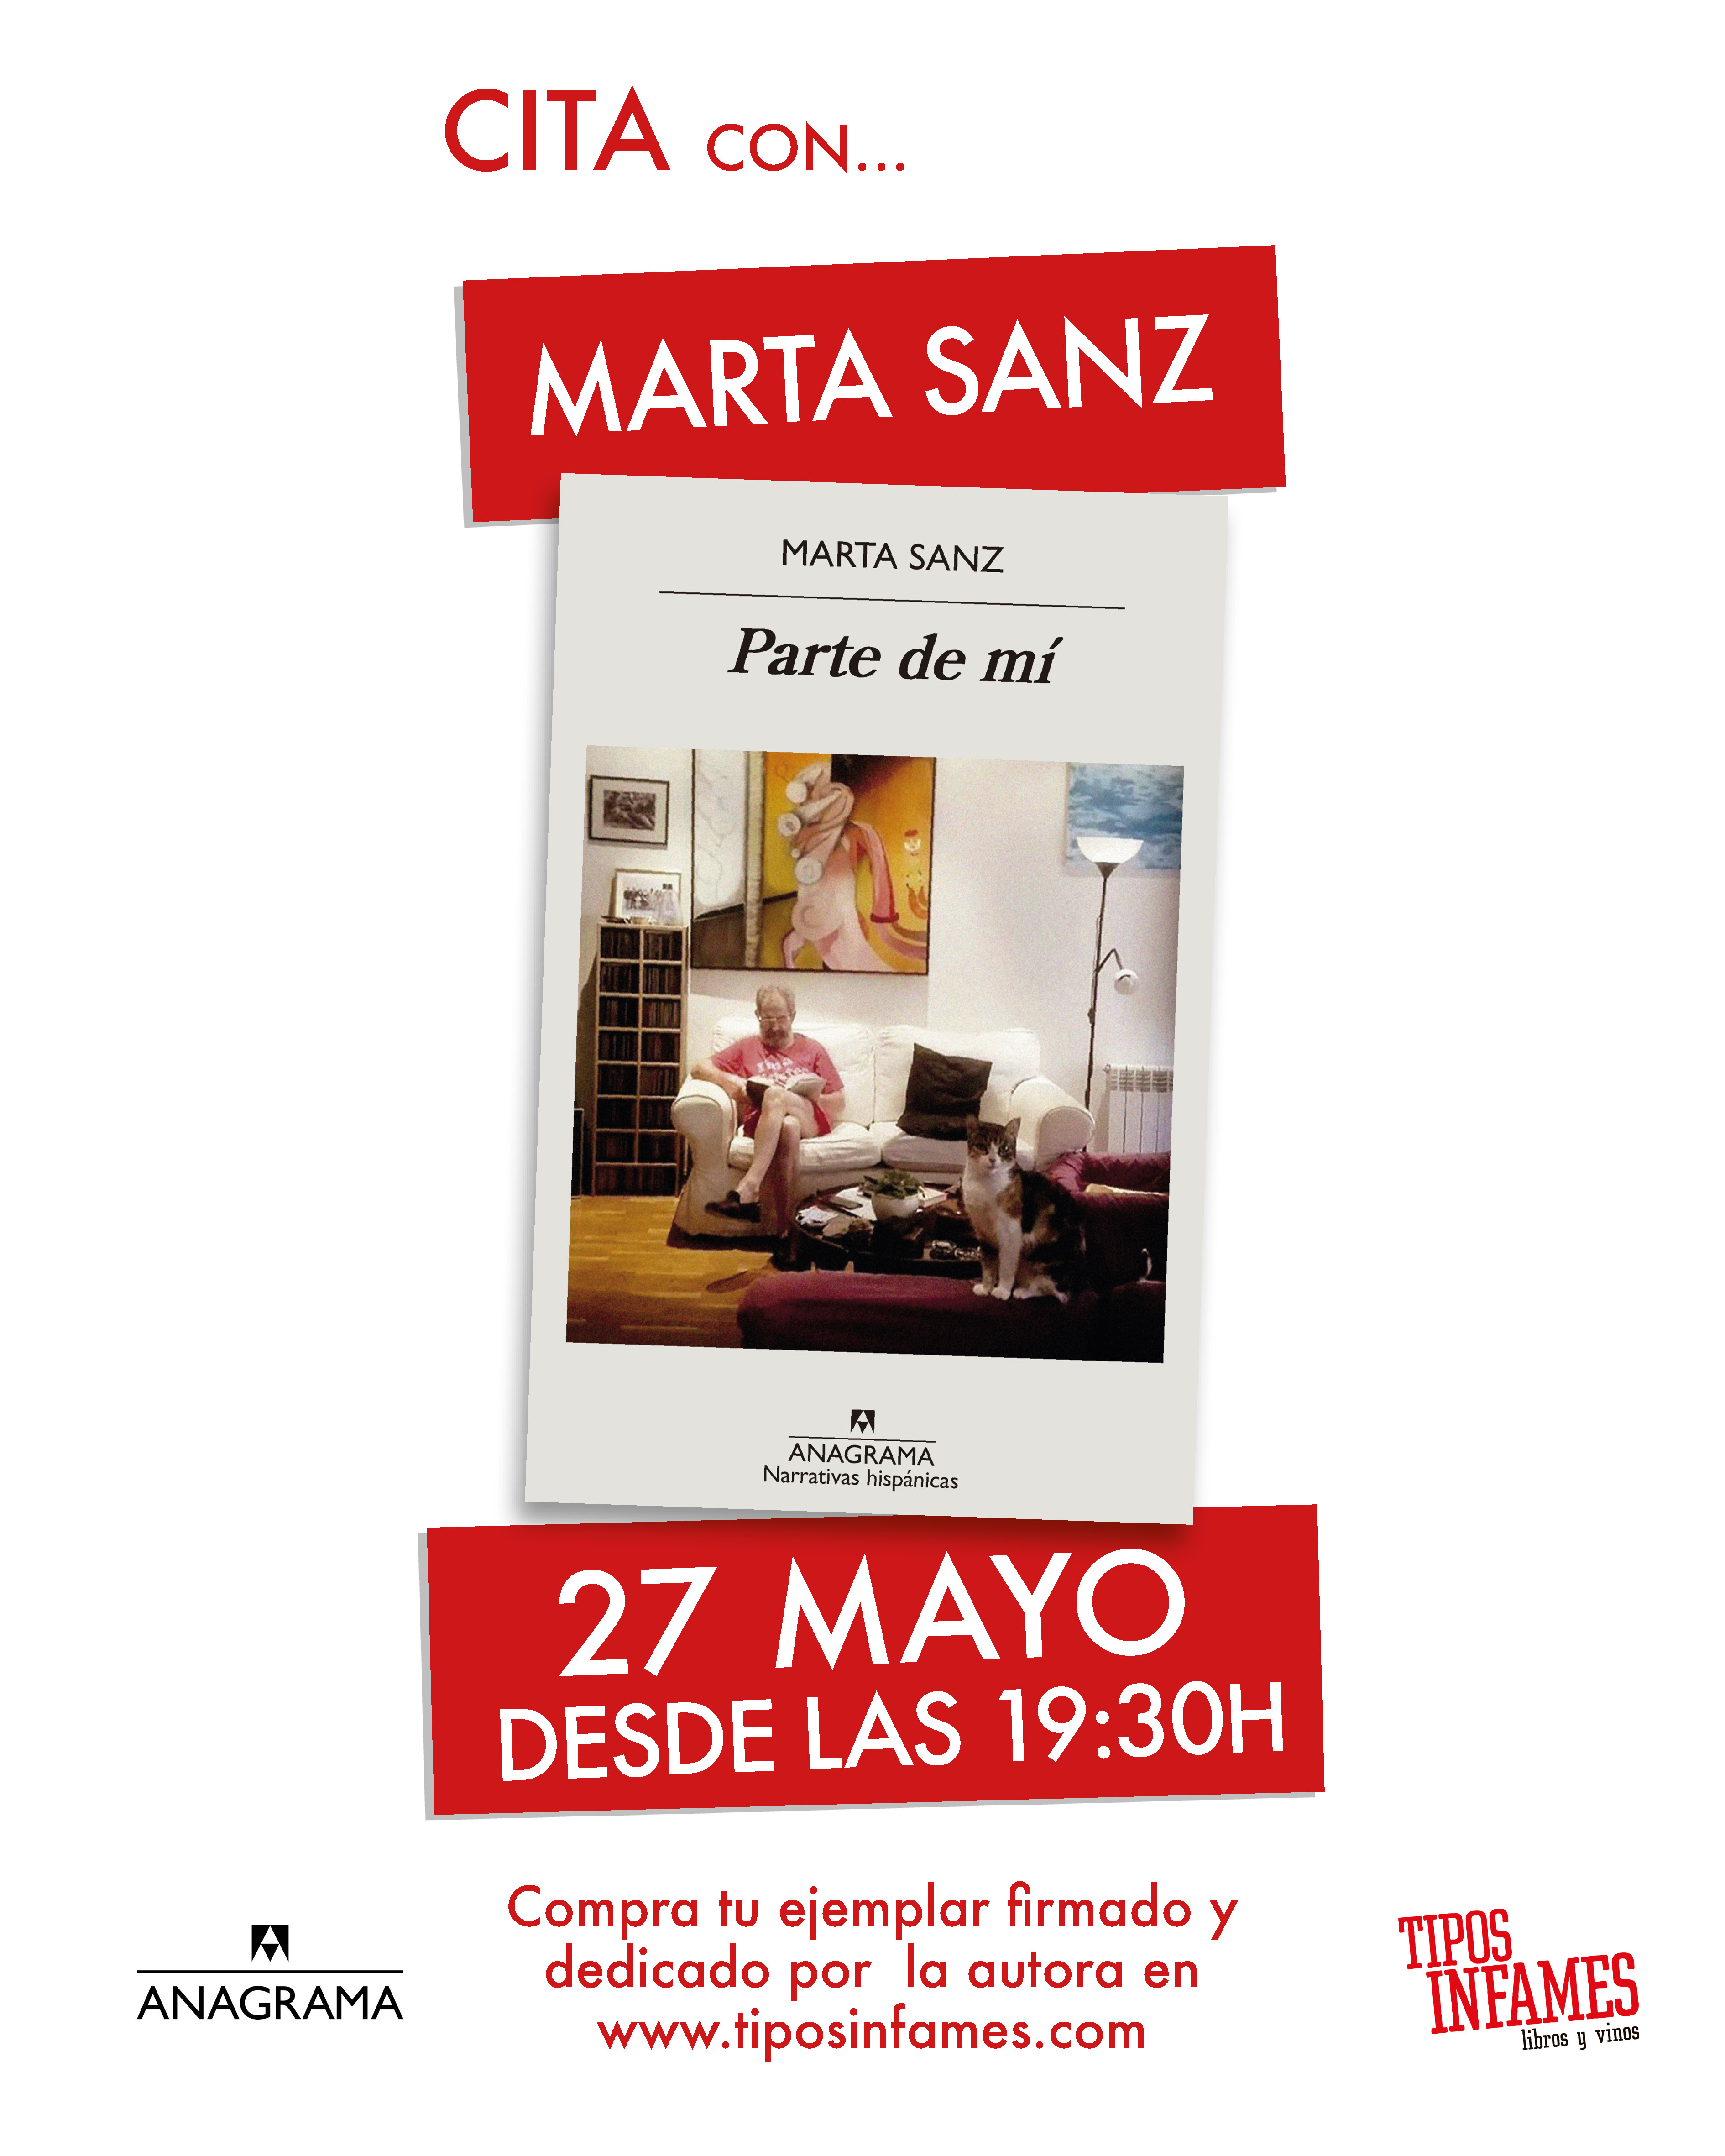 Cita con... Marta Sanz